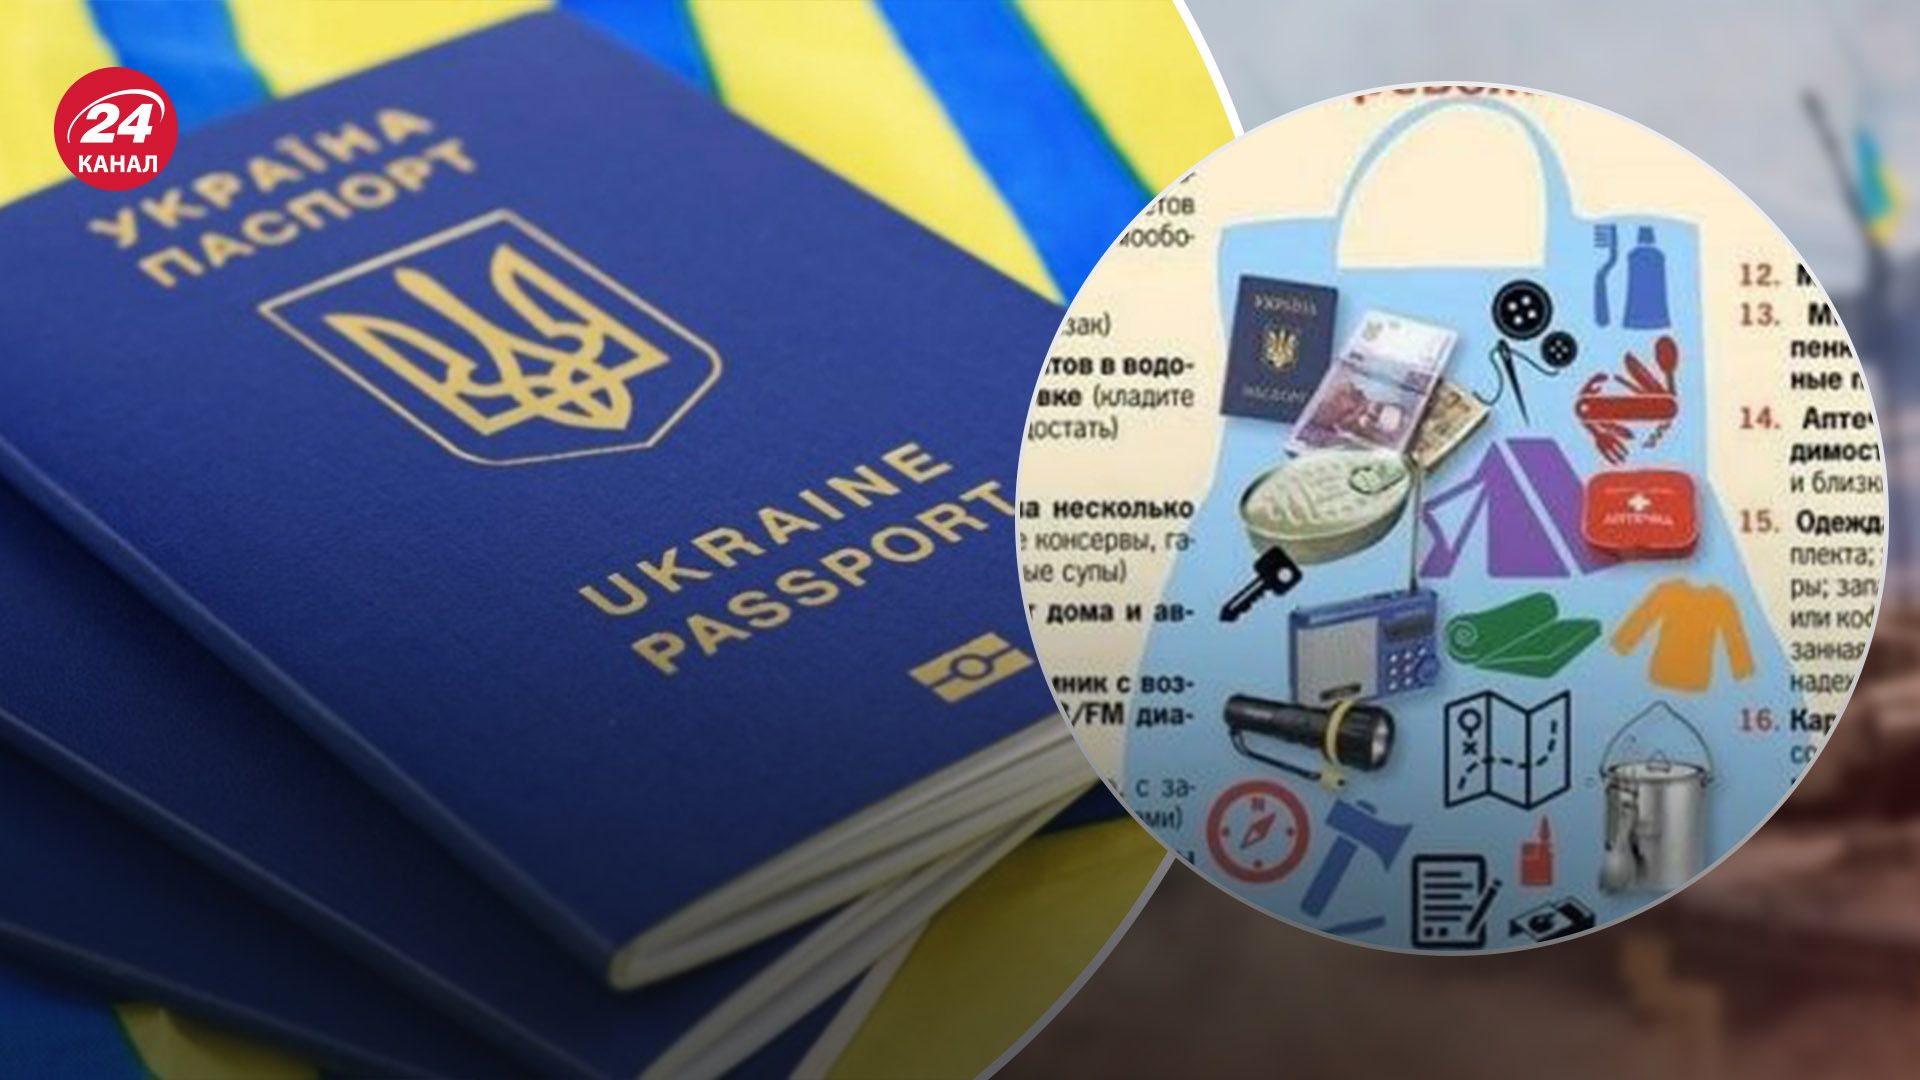 В тревожный чемодан россиянам порекомендовали положить украинский паспорт